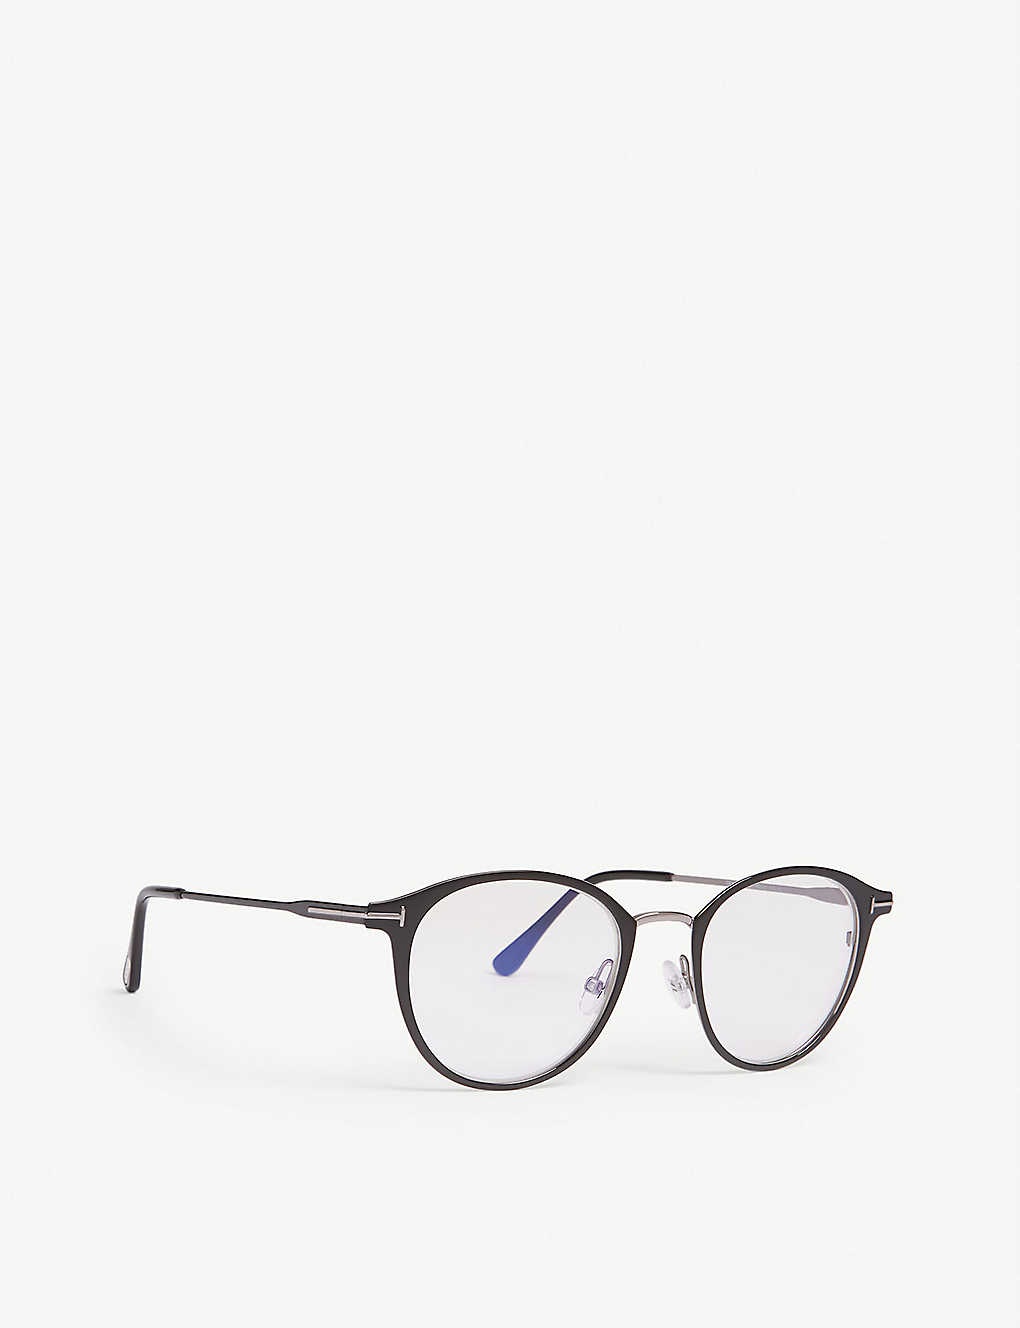 Tf5528-B phantos frame optical glasses - 3